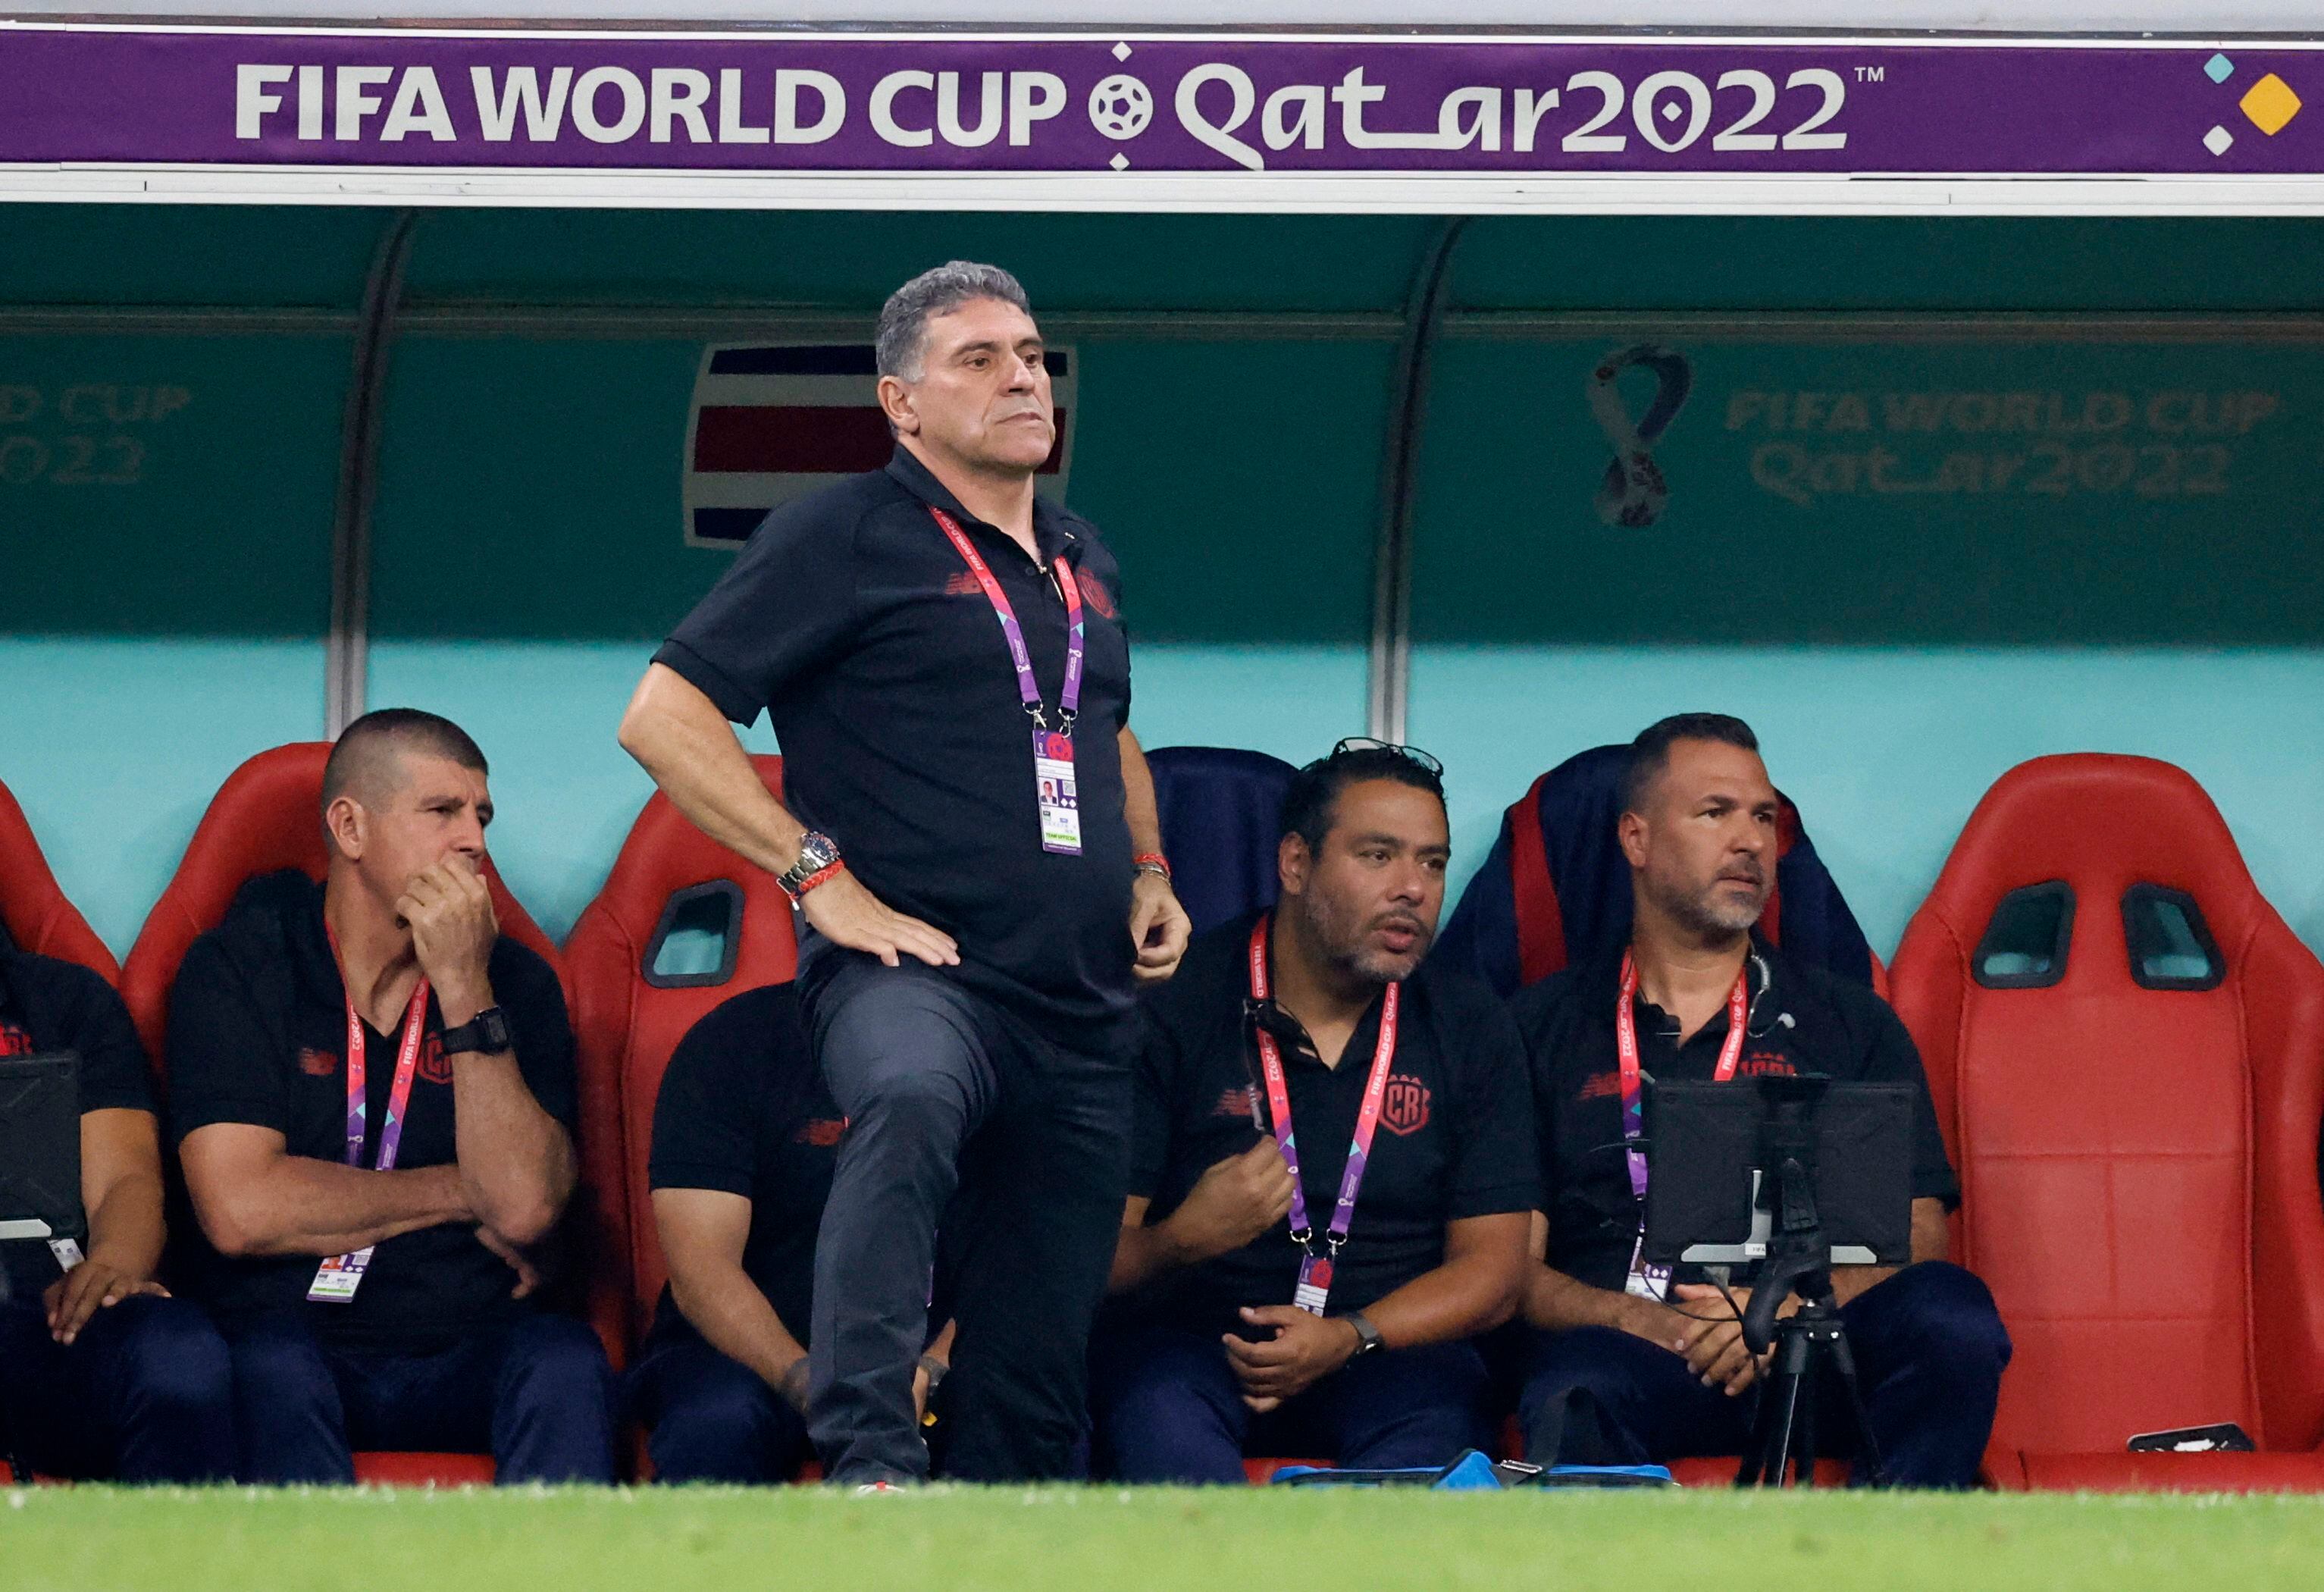 El entrenador disputó su tercer mundial al mando de diferentes selecciones. Foto: REUTERS/Thaier Al-Sudani